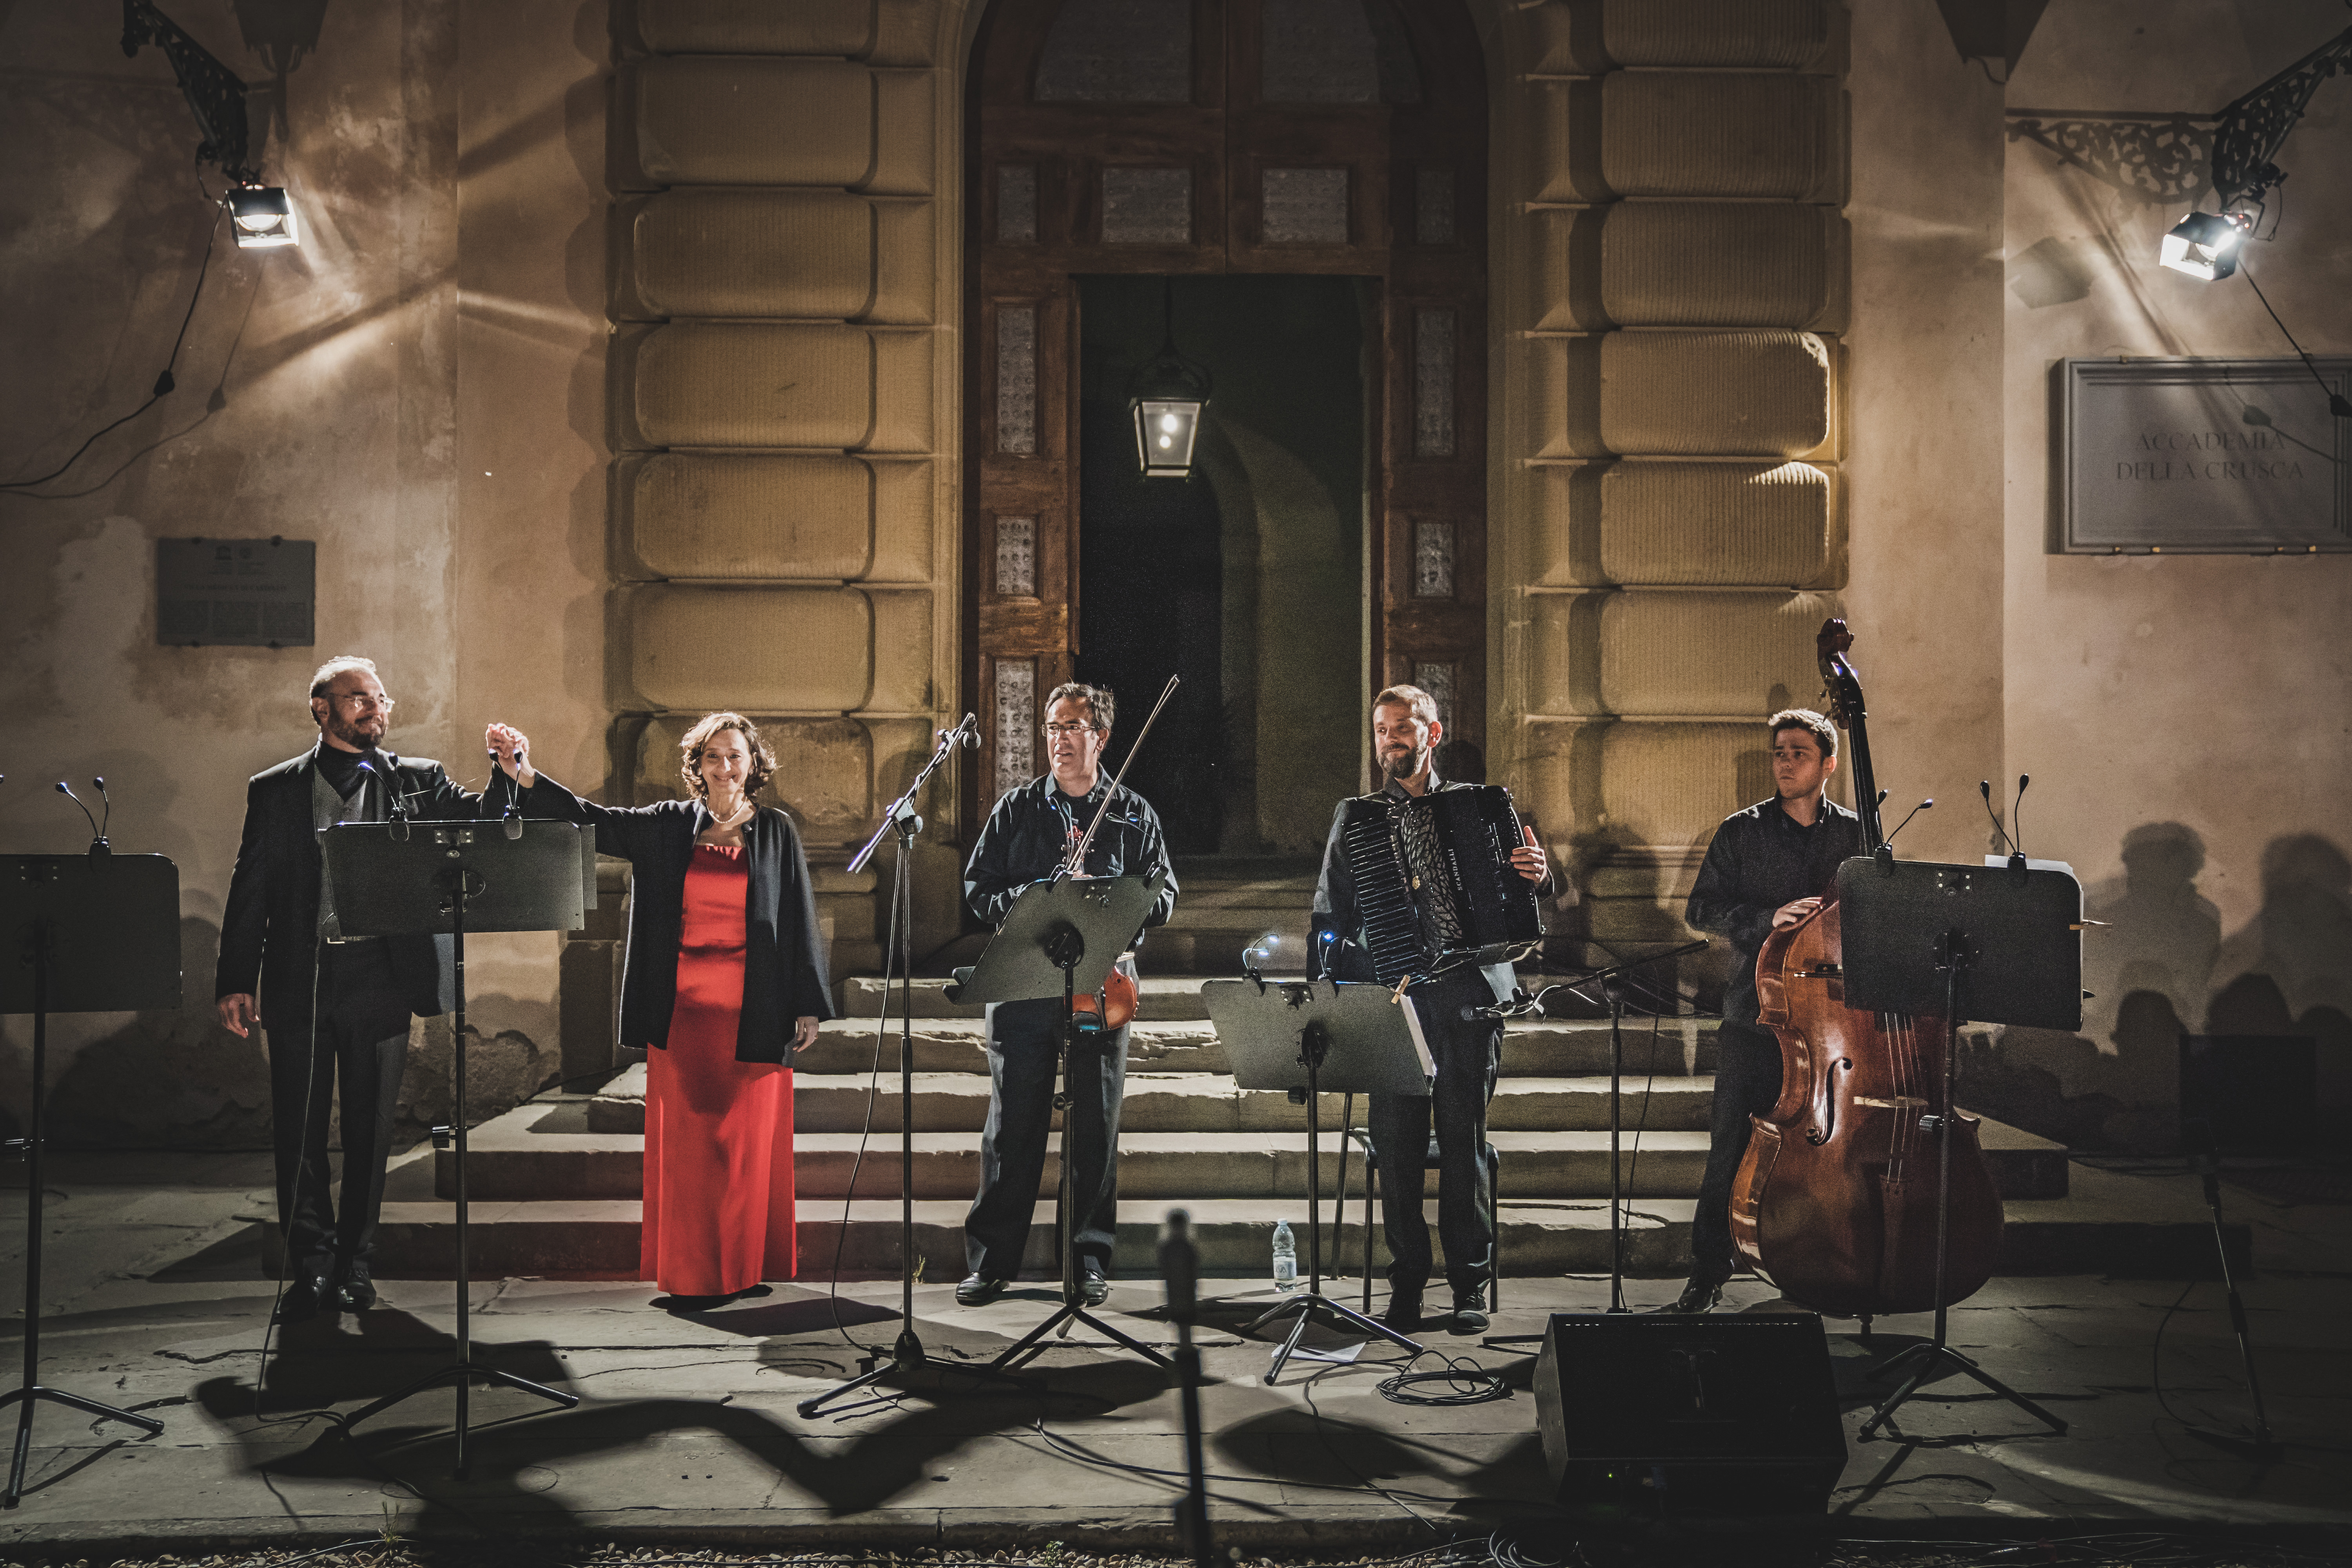 Professori dell'Orchestra e Artisti del Coro del MMF in concerto alla Crusca